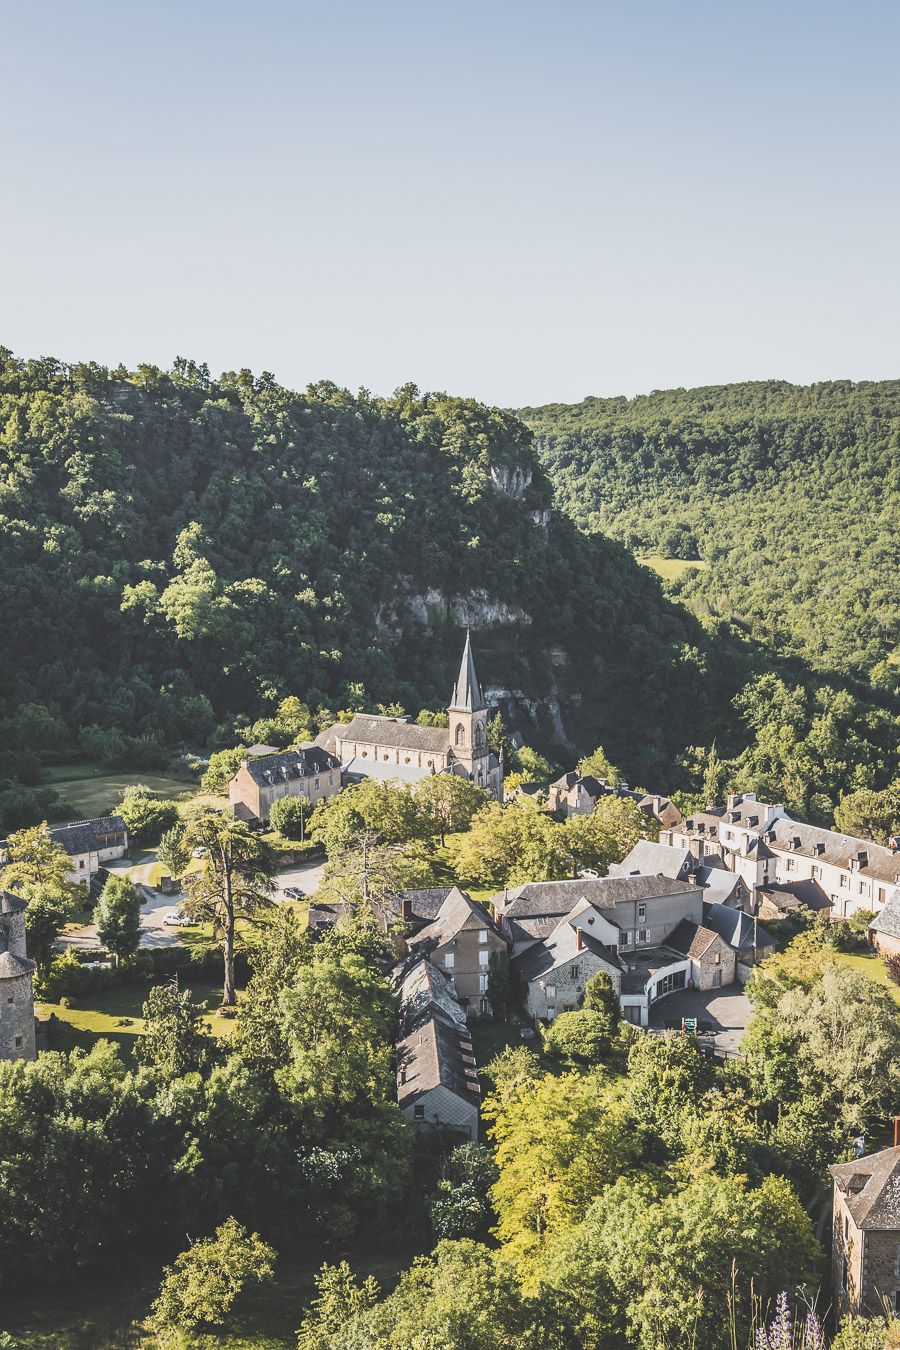 Vacances en France : découvrir l'Aveyron